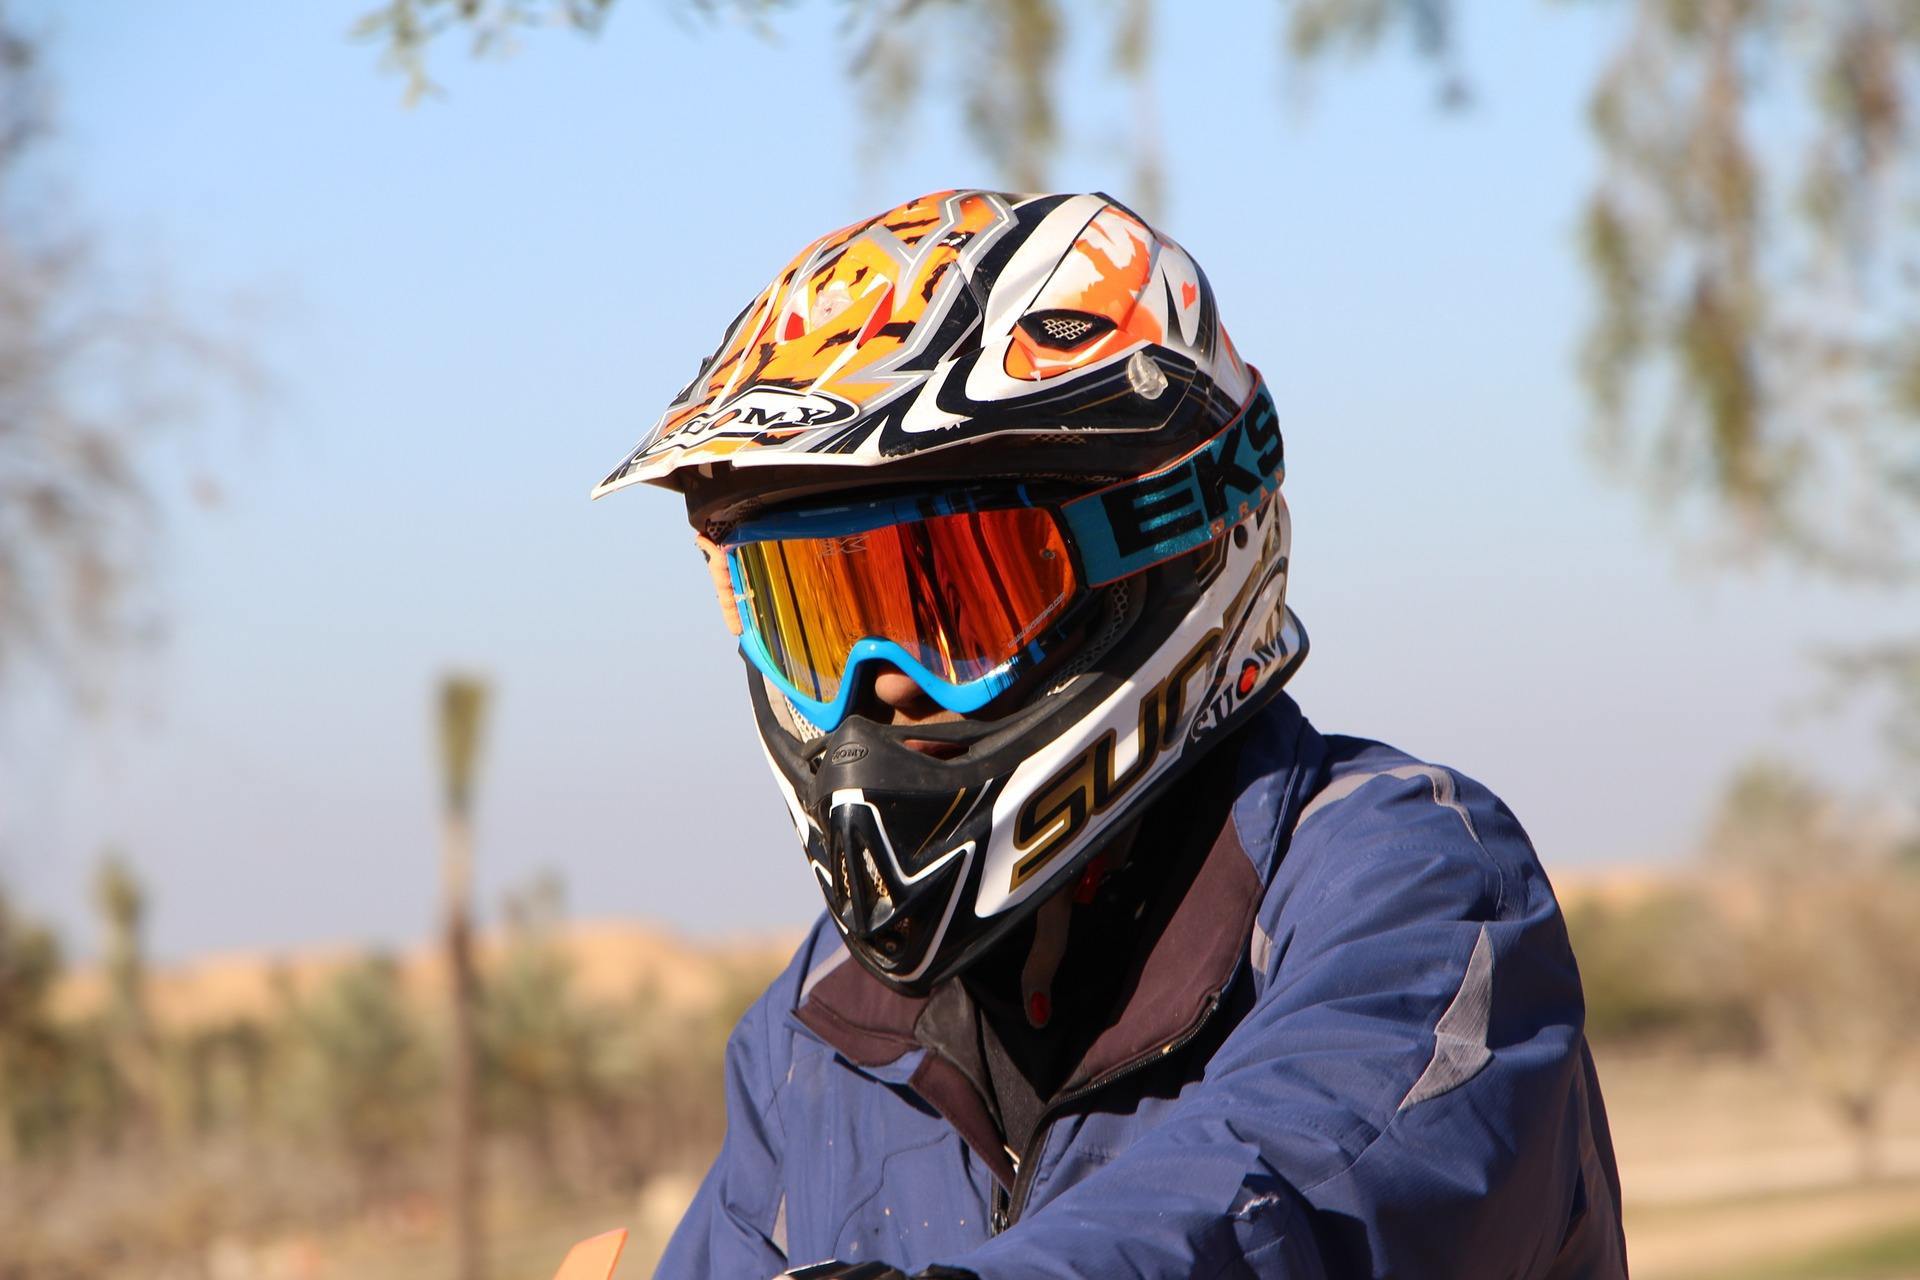 dirt jump helmets